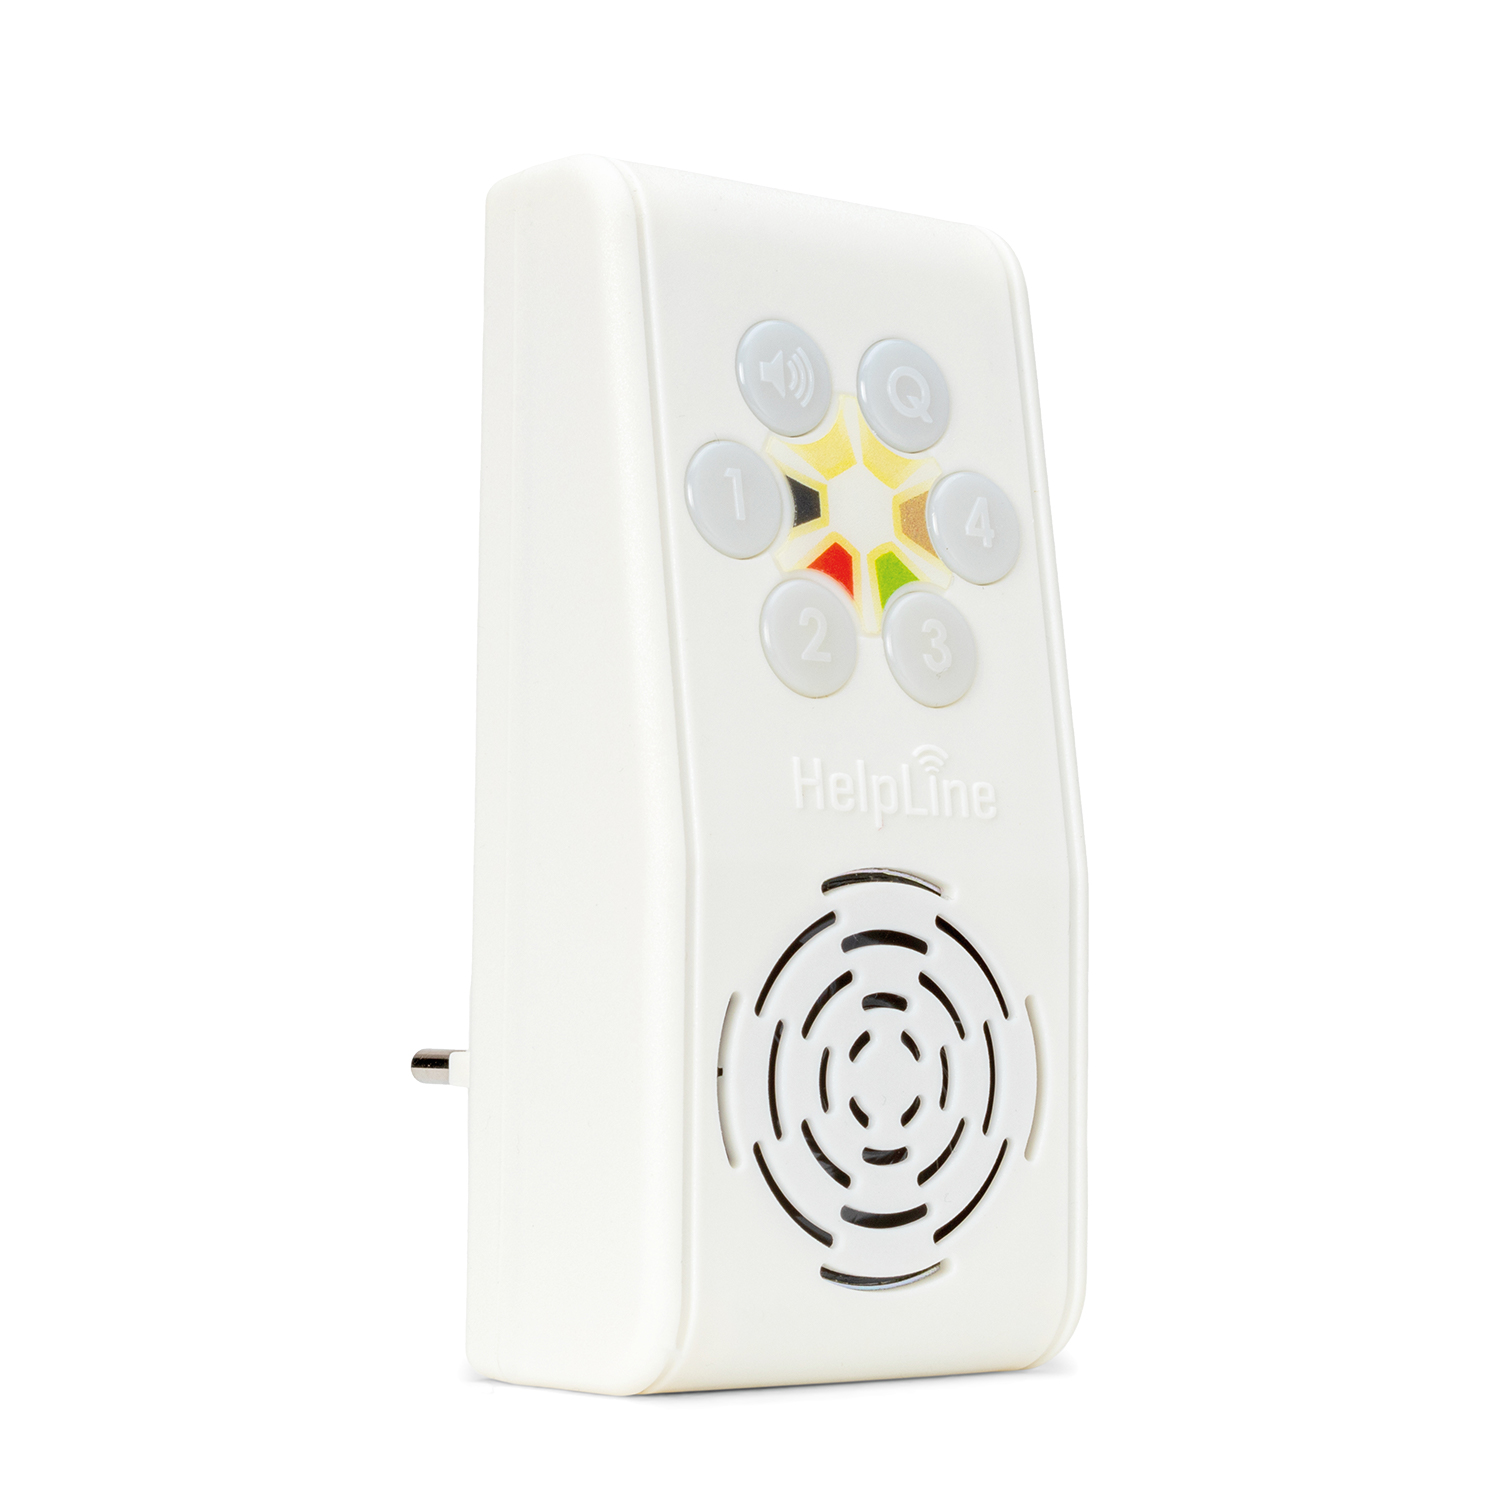 Telemat Sensormatte inklusive HelpLine  230 Funk-Empfänger: Funk Alarmtrittmatte für Senioren